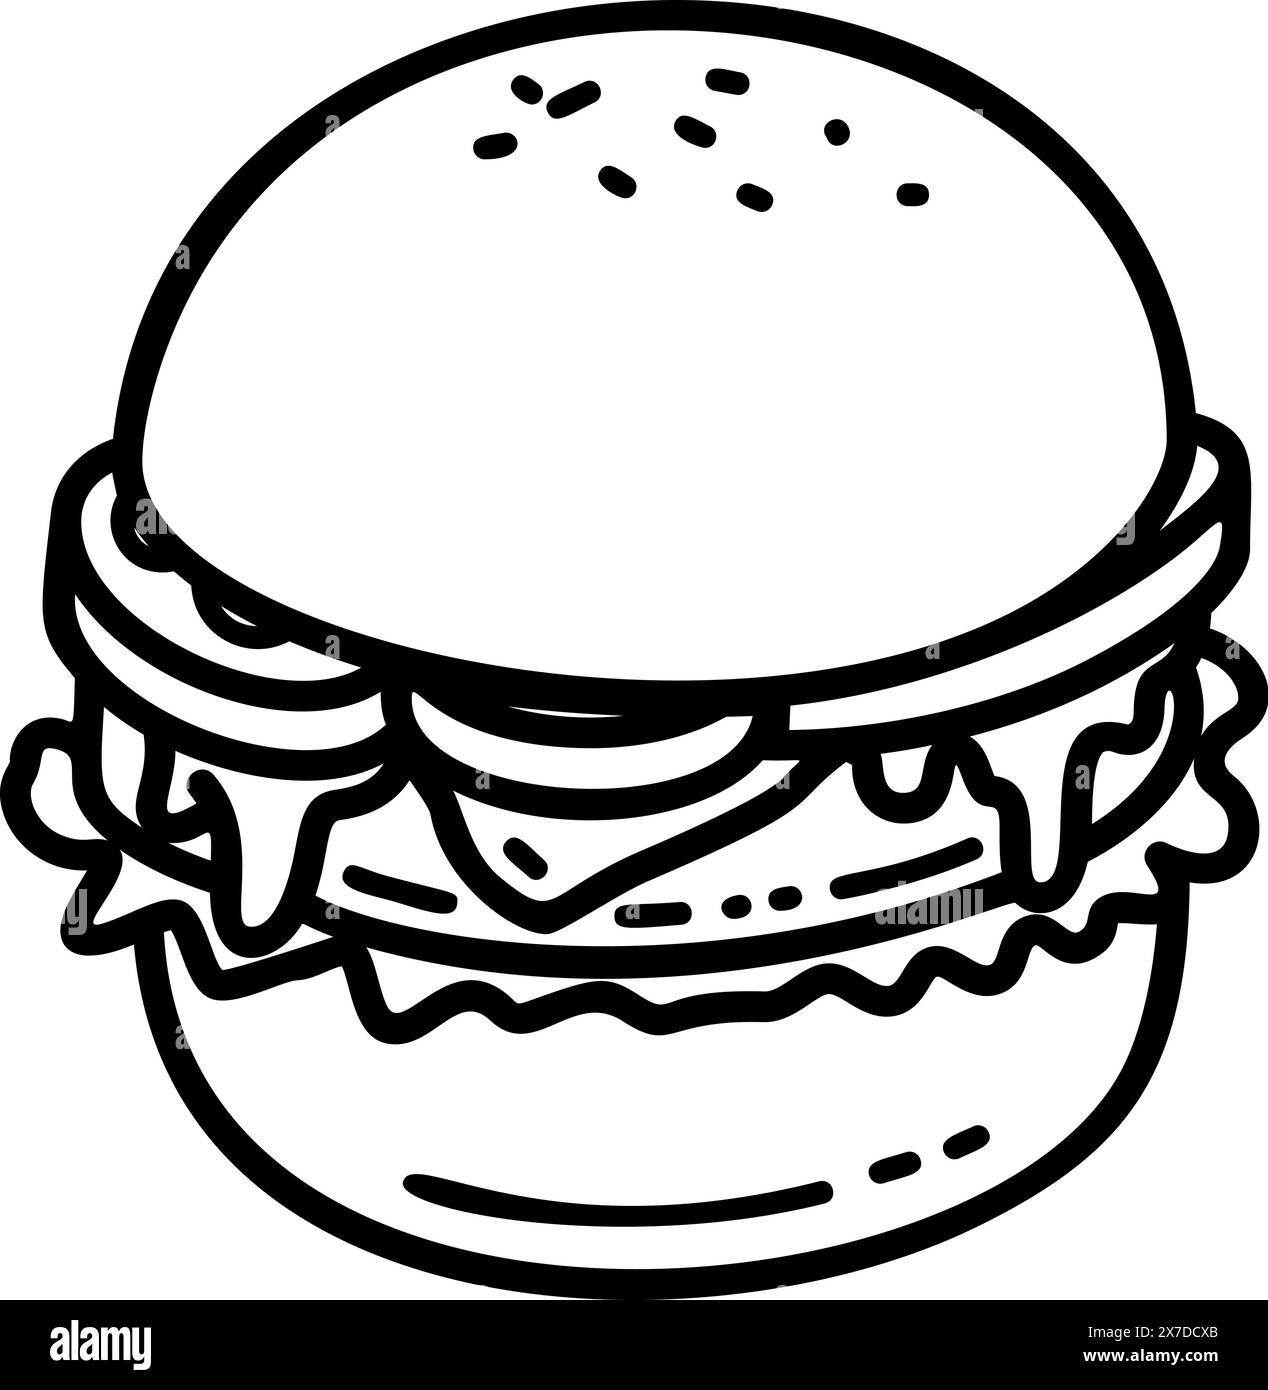 Illustration of burger in cartoon style. Design element for logo, label, badge, emblem. Vector illustration Stock Vector